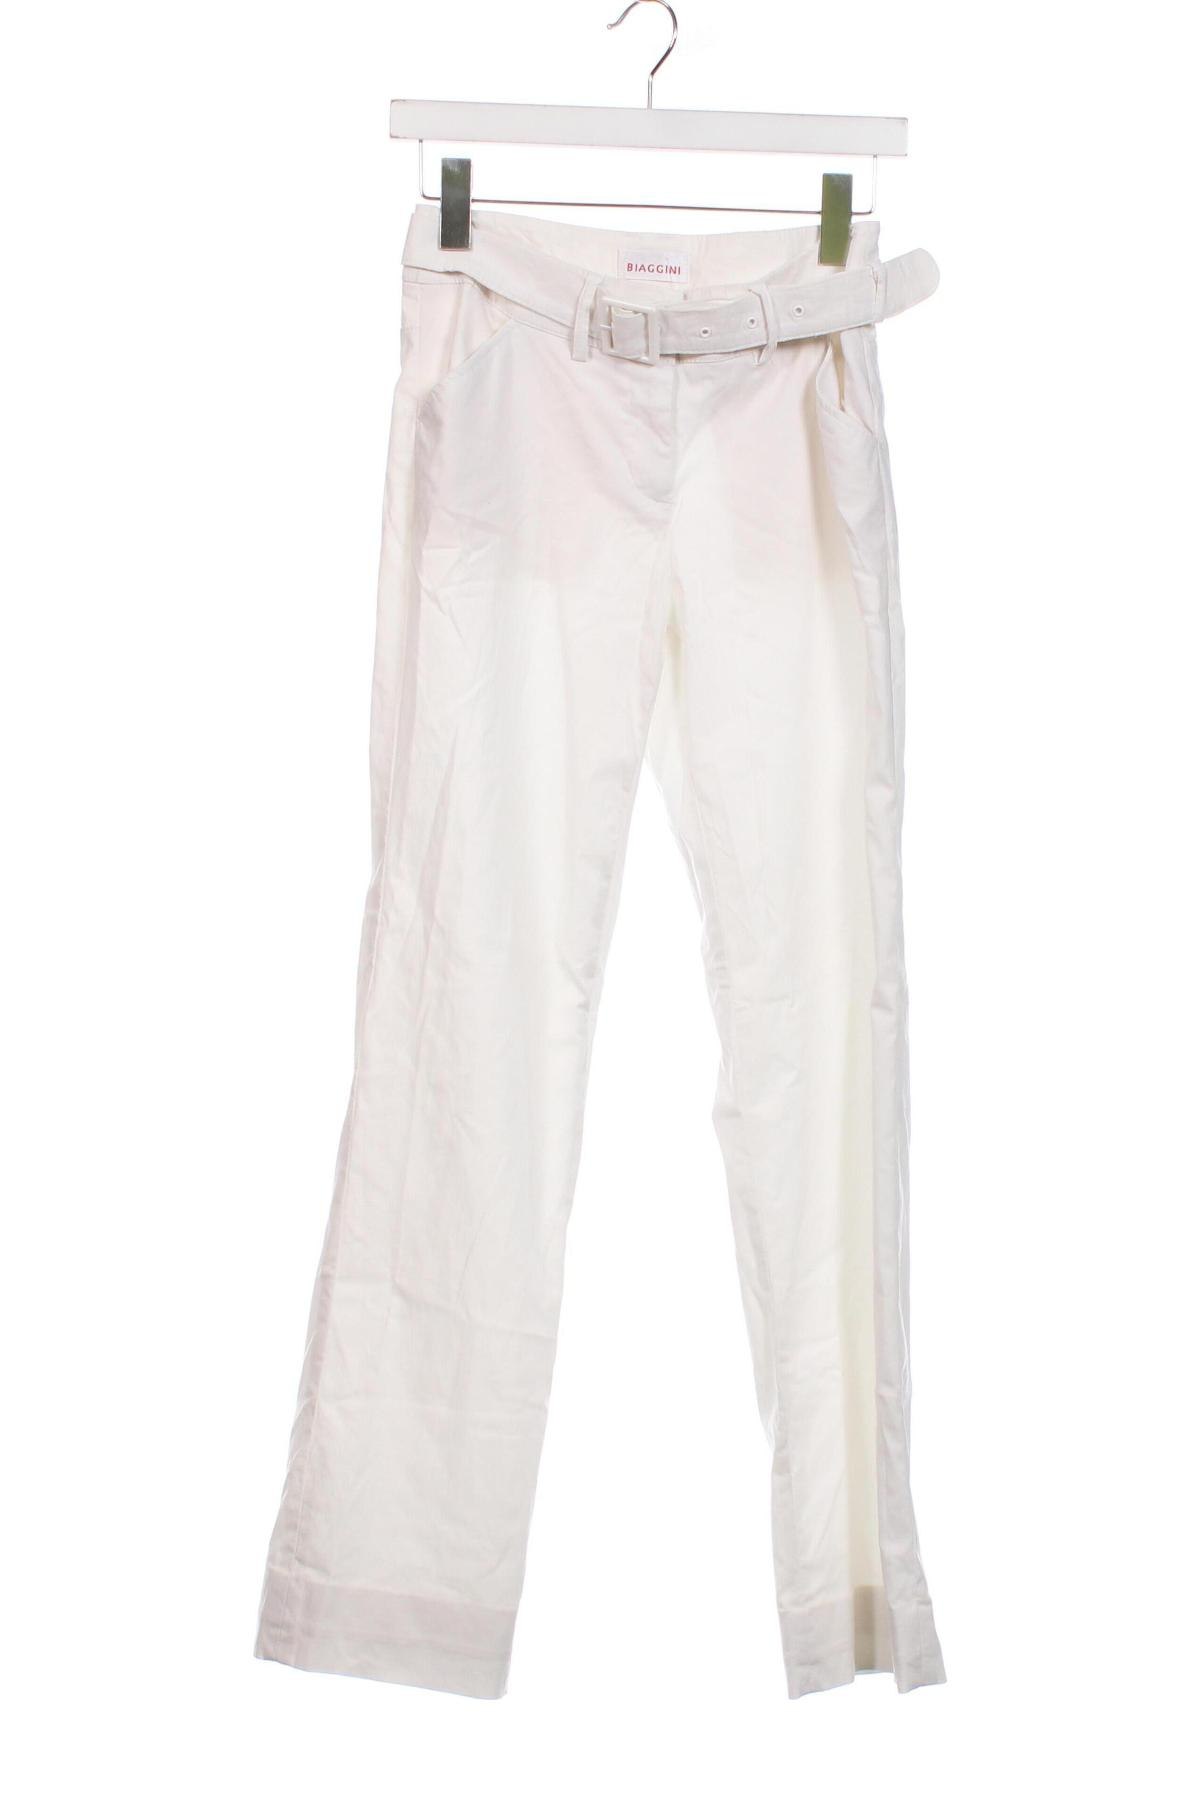 Дамски панталон Biaggini, Размер XS, Цвят Бял, Цена 8,70 лв.